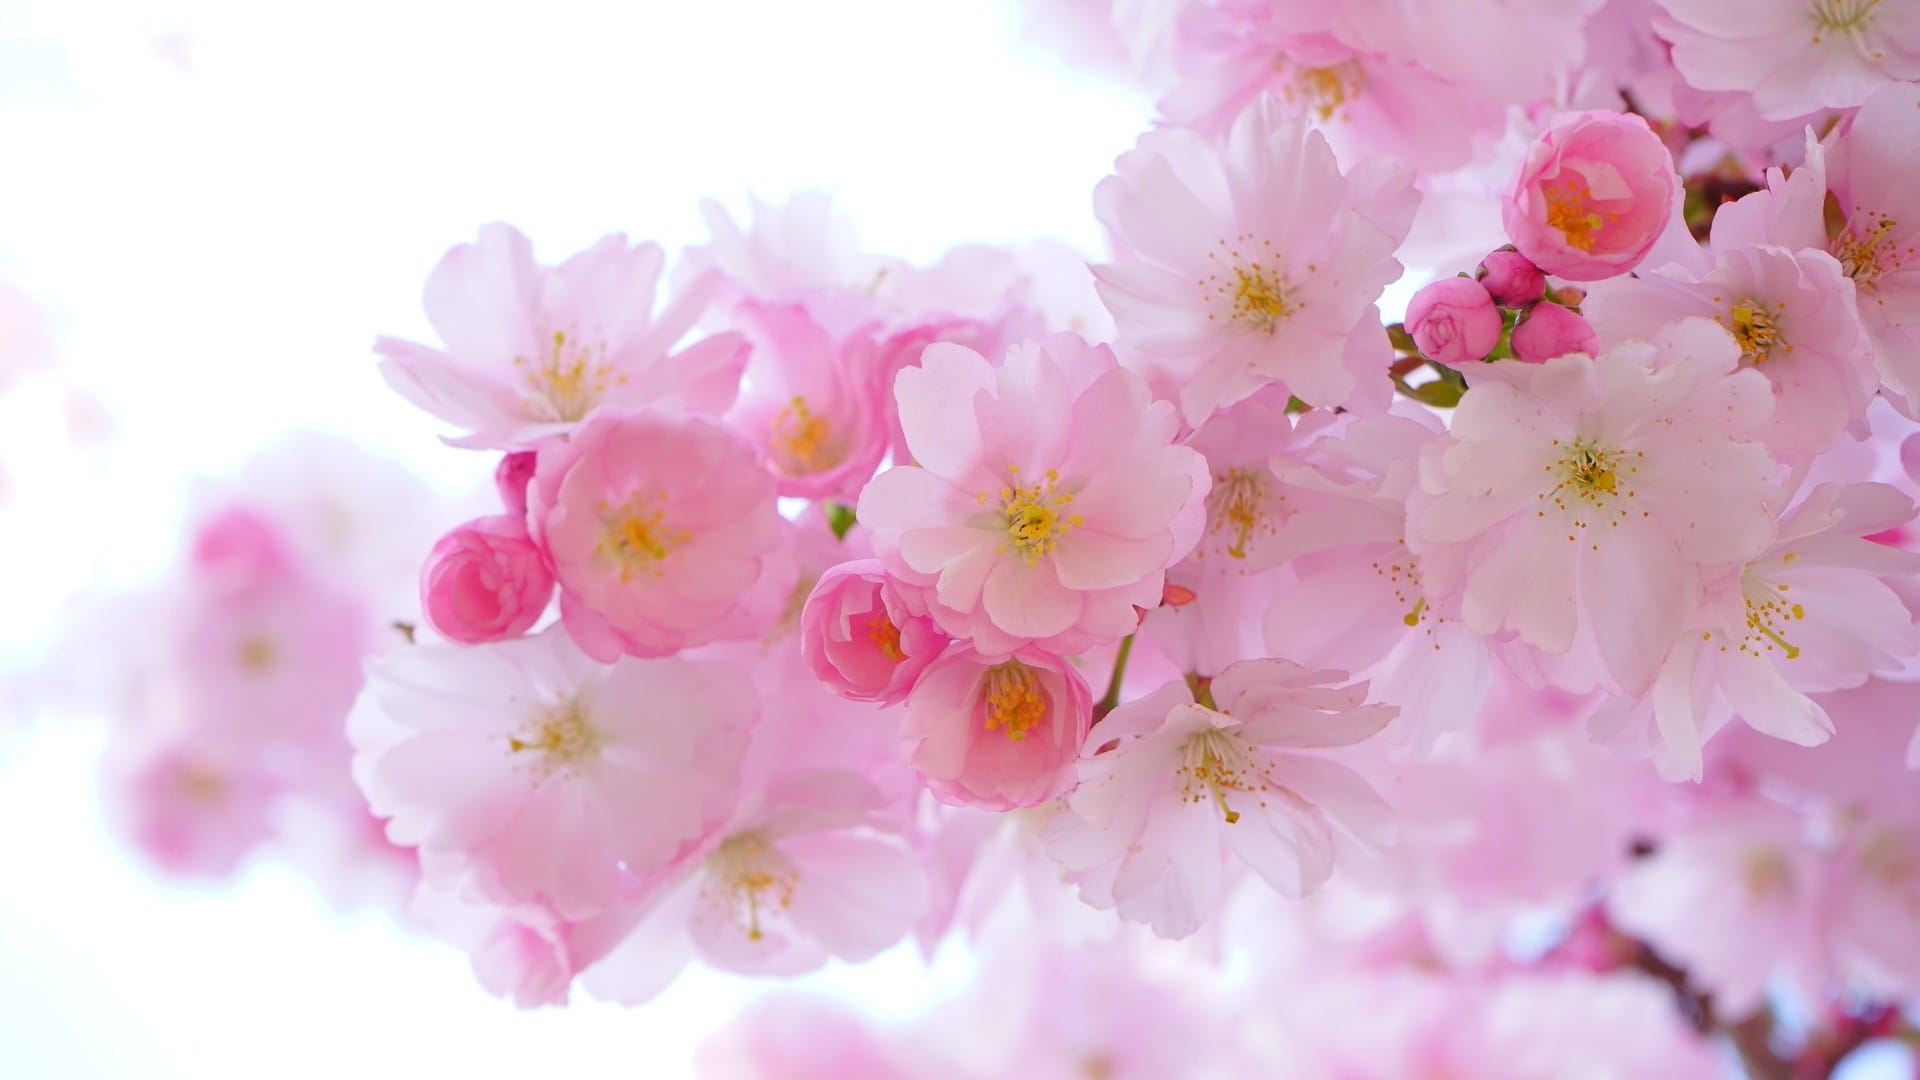 淡雅唯美的花瓣粉红系风格背景图片高清壁纸